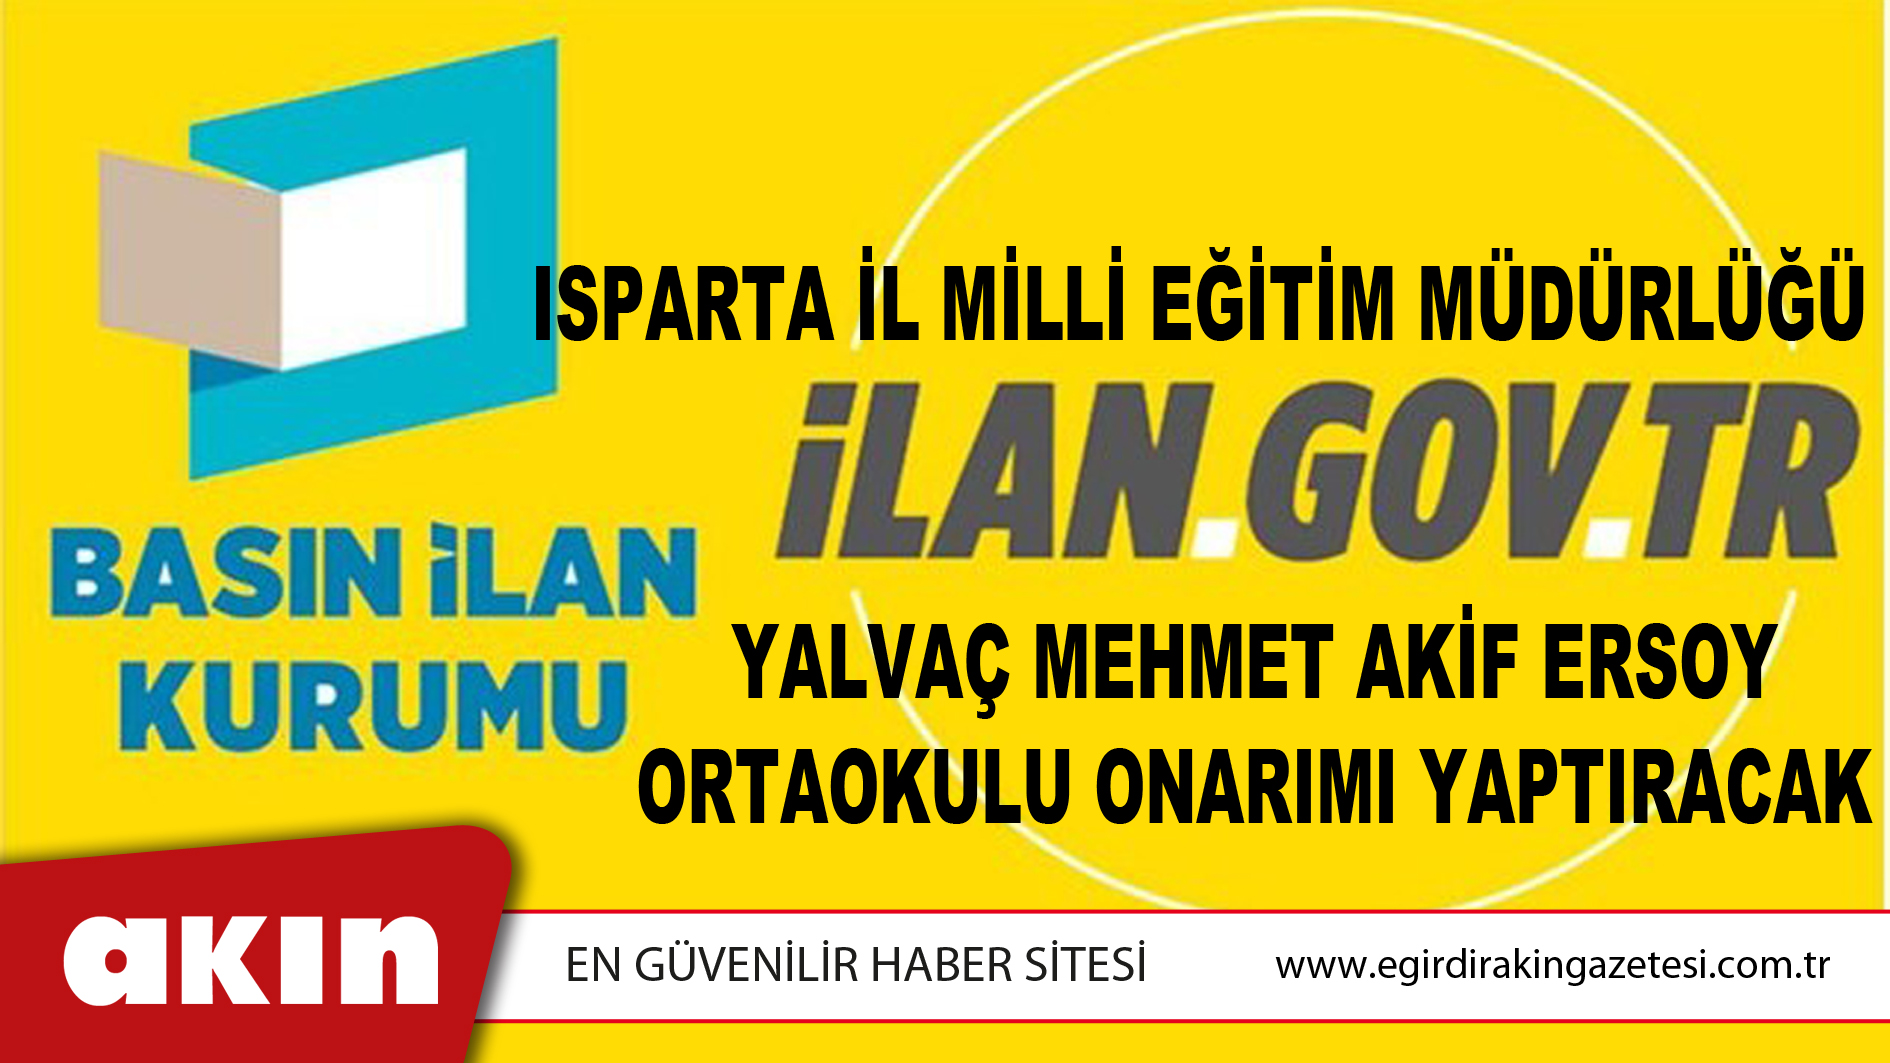 Isparta İl Milli Eğitim Müdürlüğü Yalvaç Mehmet Akif Ersoy Ortaokulu Onarımı Yaptıracak